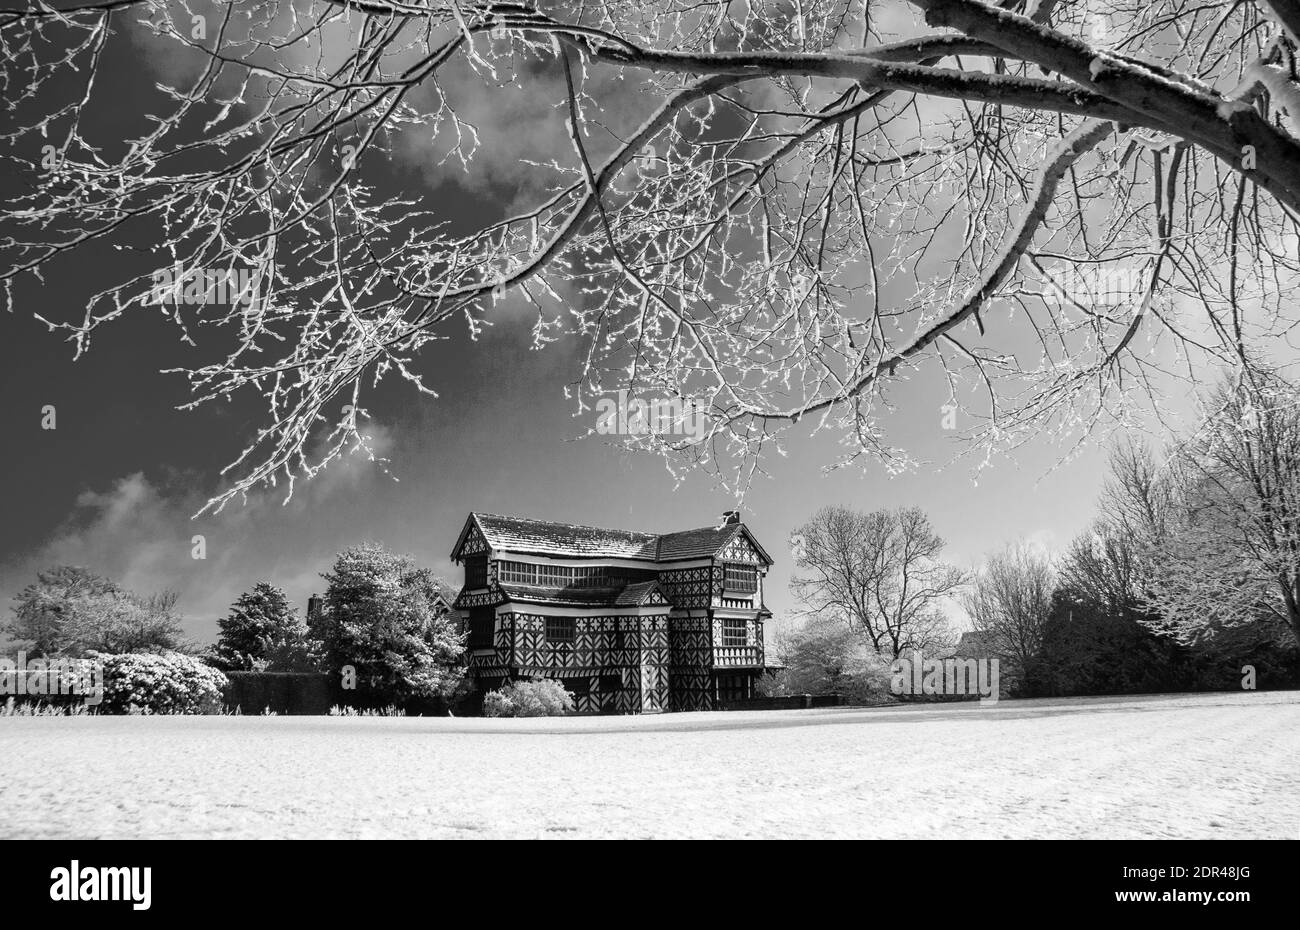 Moreton Hall un petit manoir Tudor propriété du National Trust à proximité de Congleton Cheshire Angleterre dans la neige comme vu du sud façon Cheshire Banque D'Images